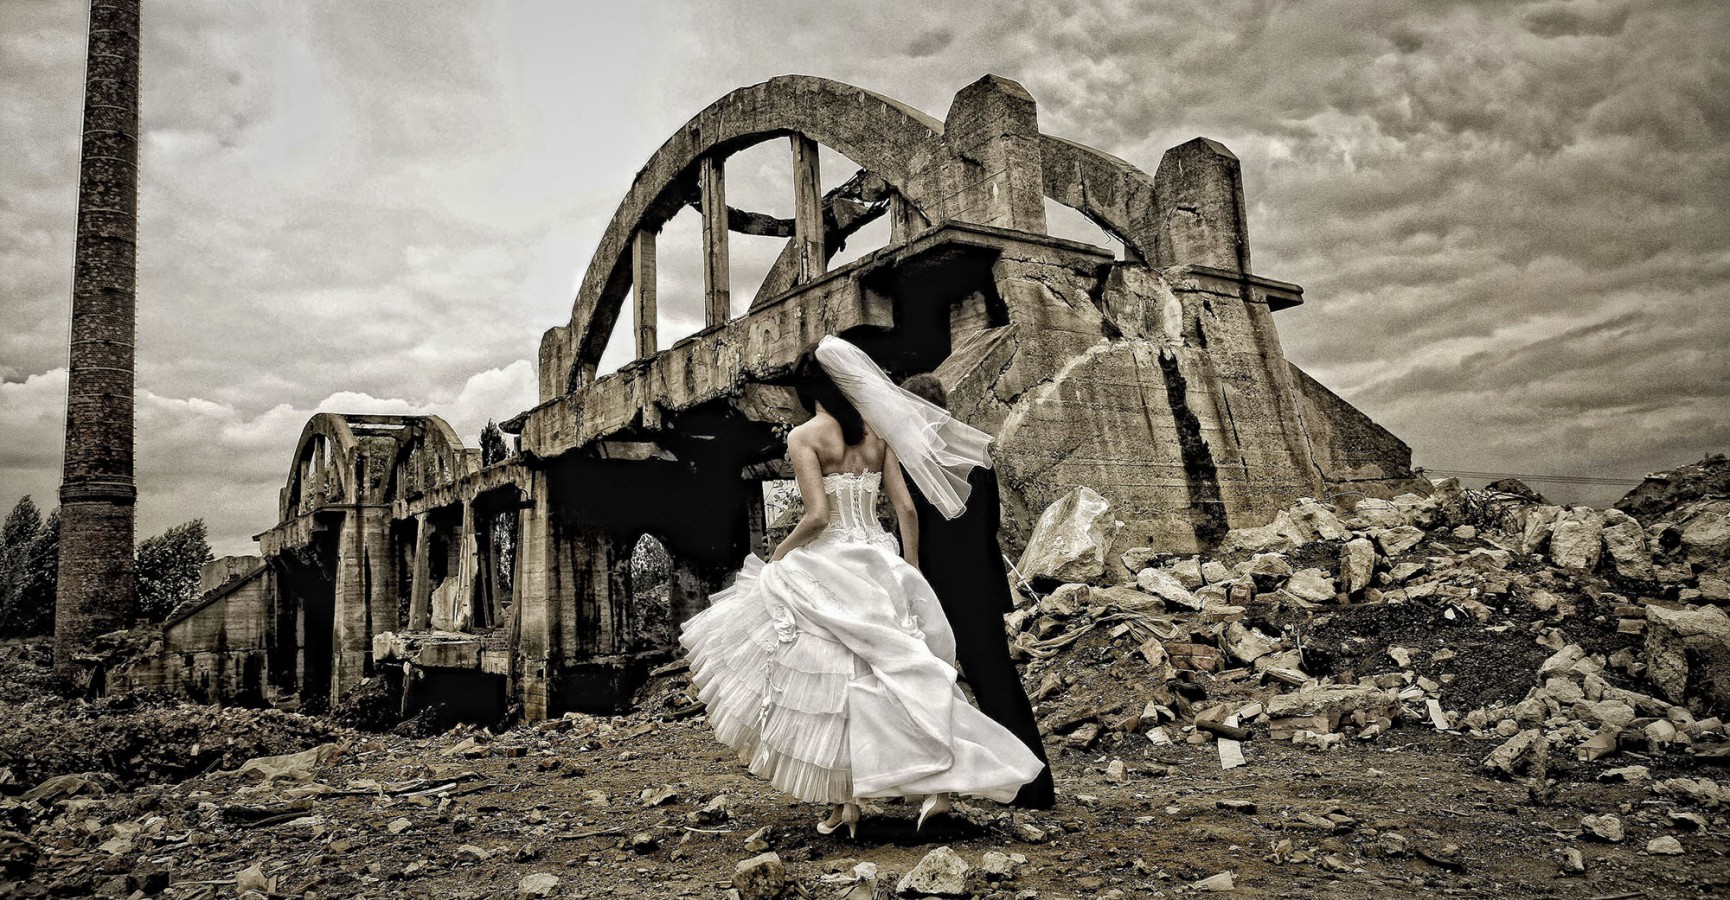 zdjęcia katowice fotograf michal-krawczynski portfolio zdjecia slubne inspiracje wesele plener slubny sesja slubna